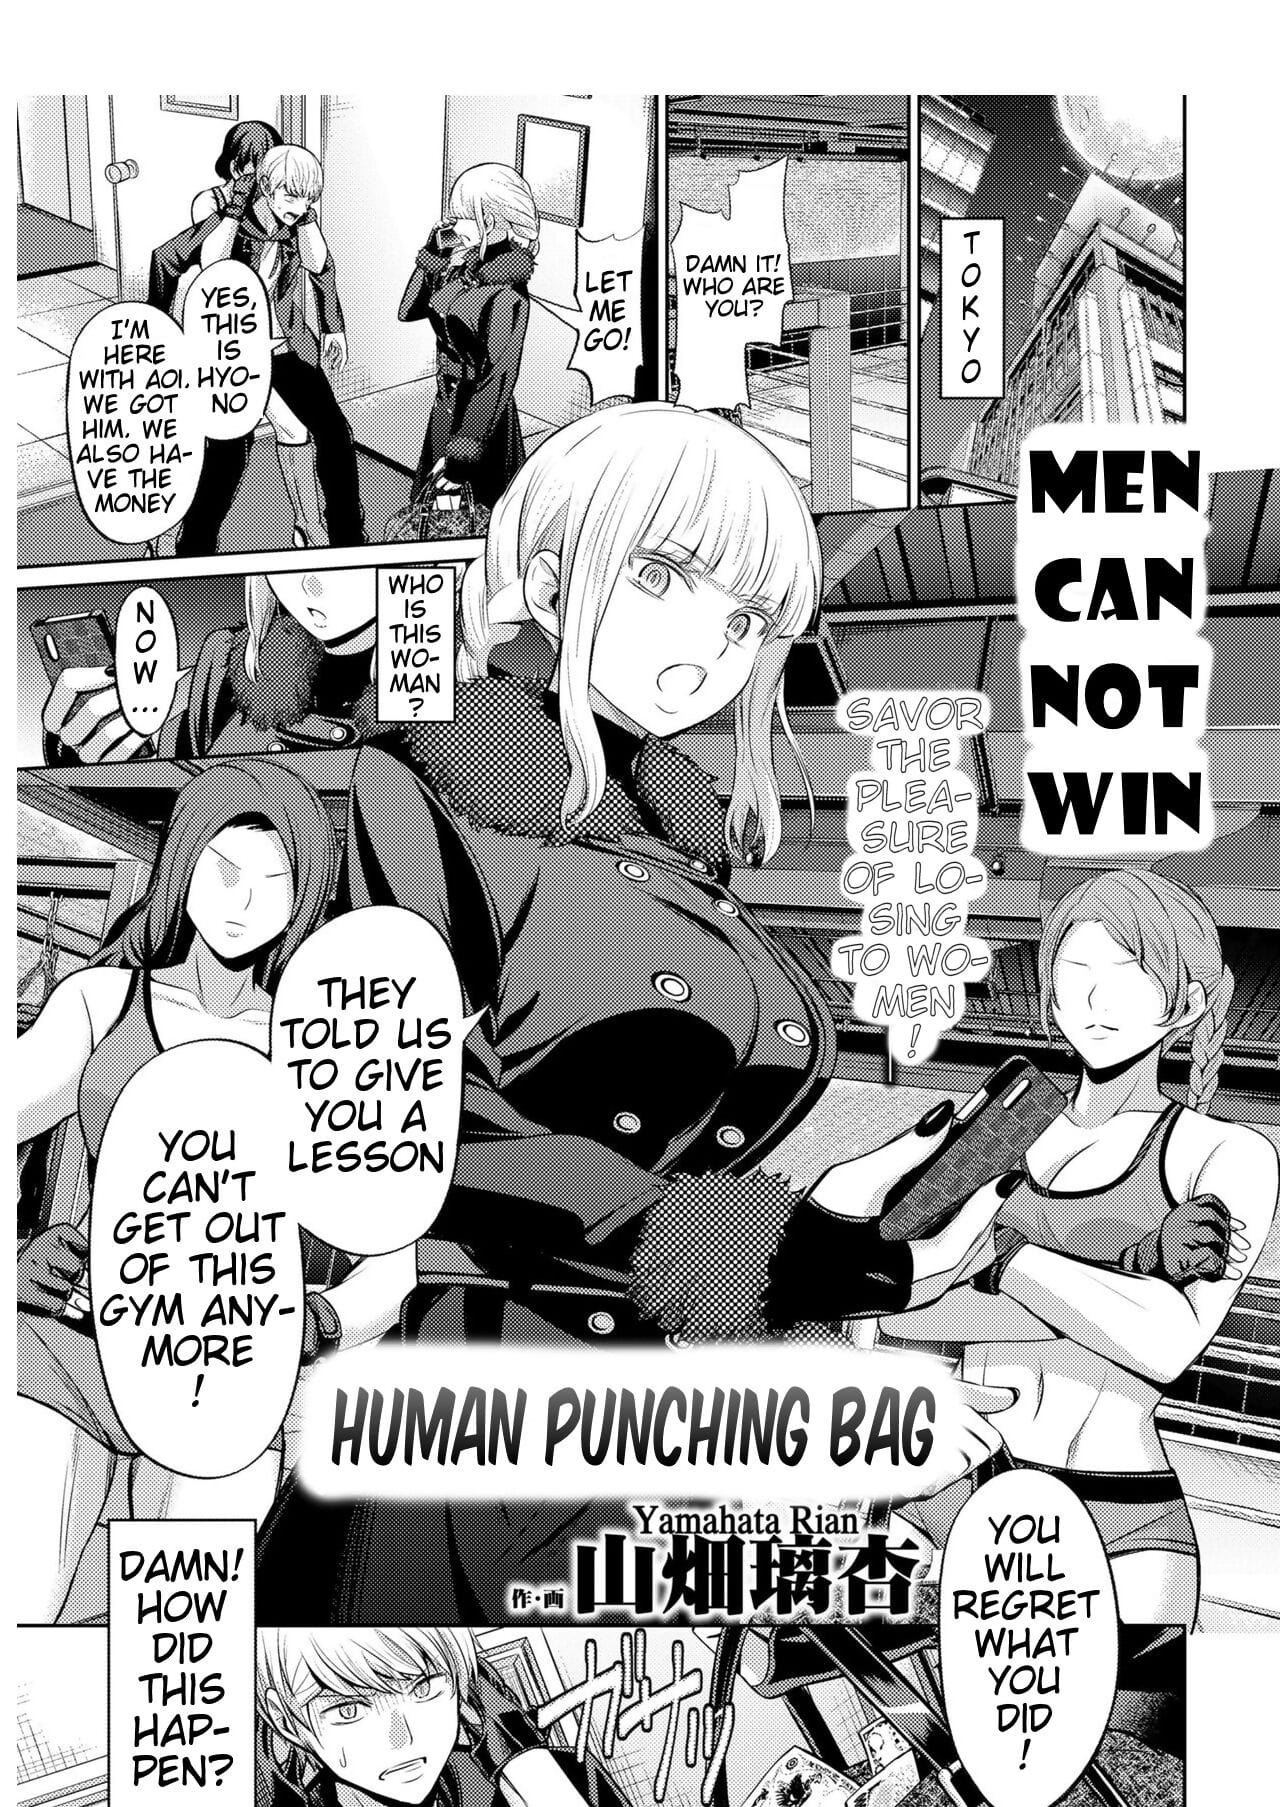 Ningen Sandbag - Human Punching Bag page 1